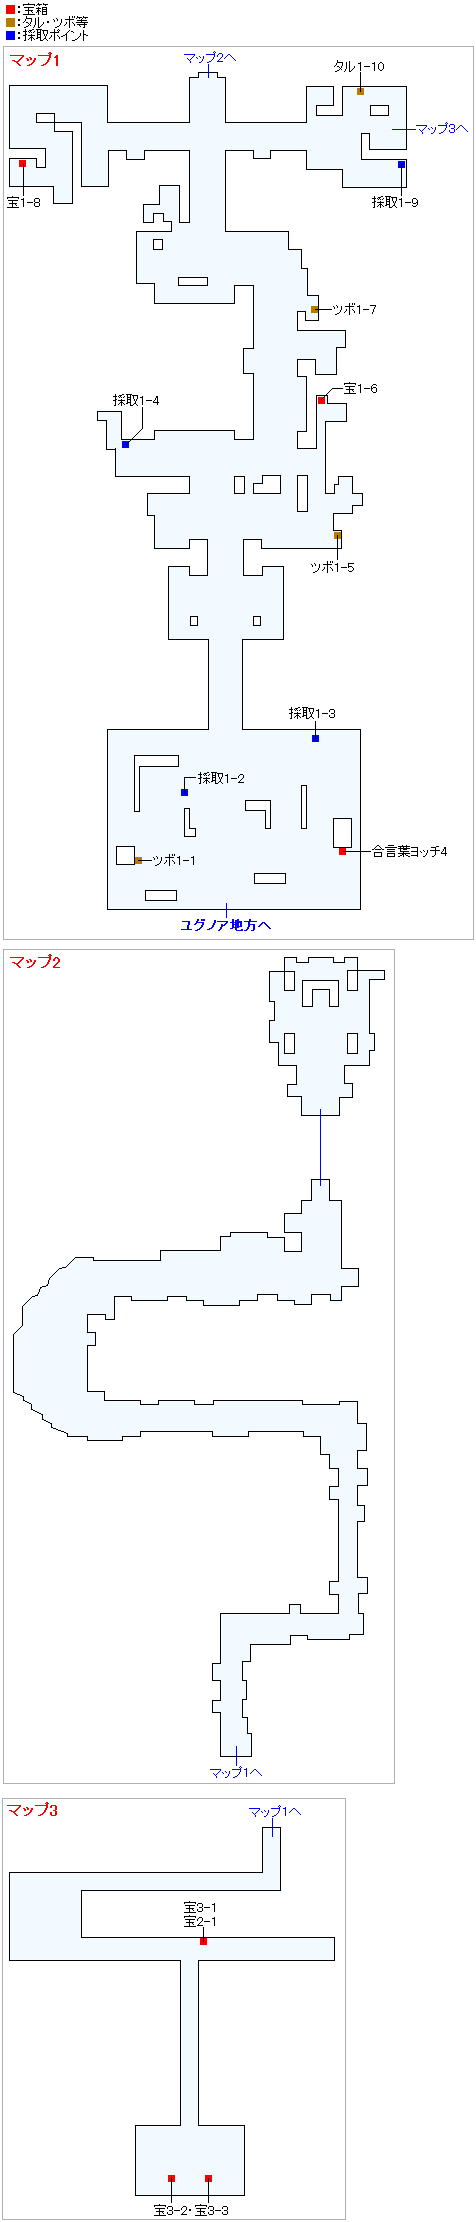 ユグノア城跡（2Dモード）のマップ画像